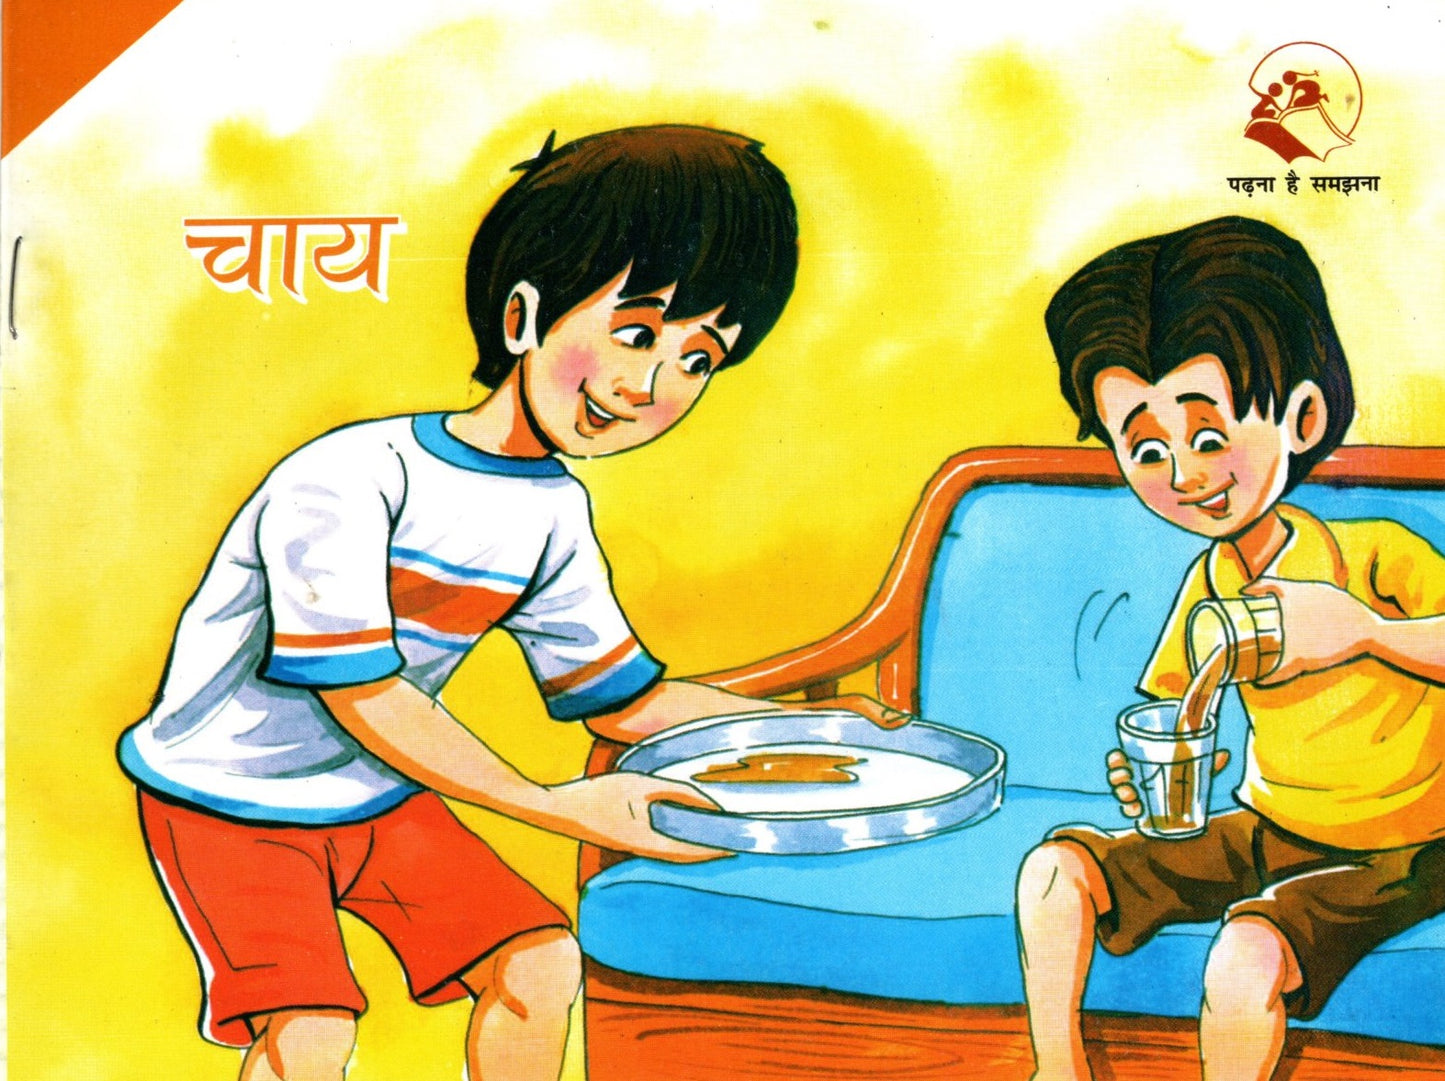 Barkha Series Set of 40 Books (Hindi)